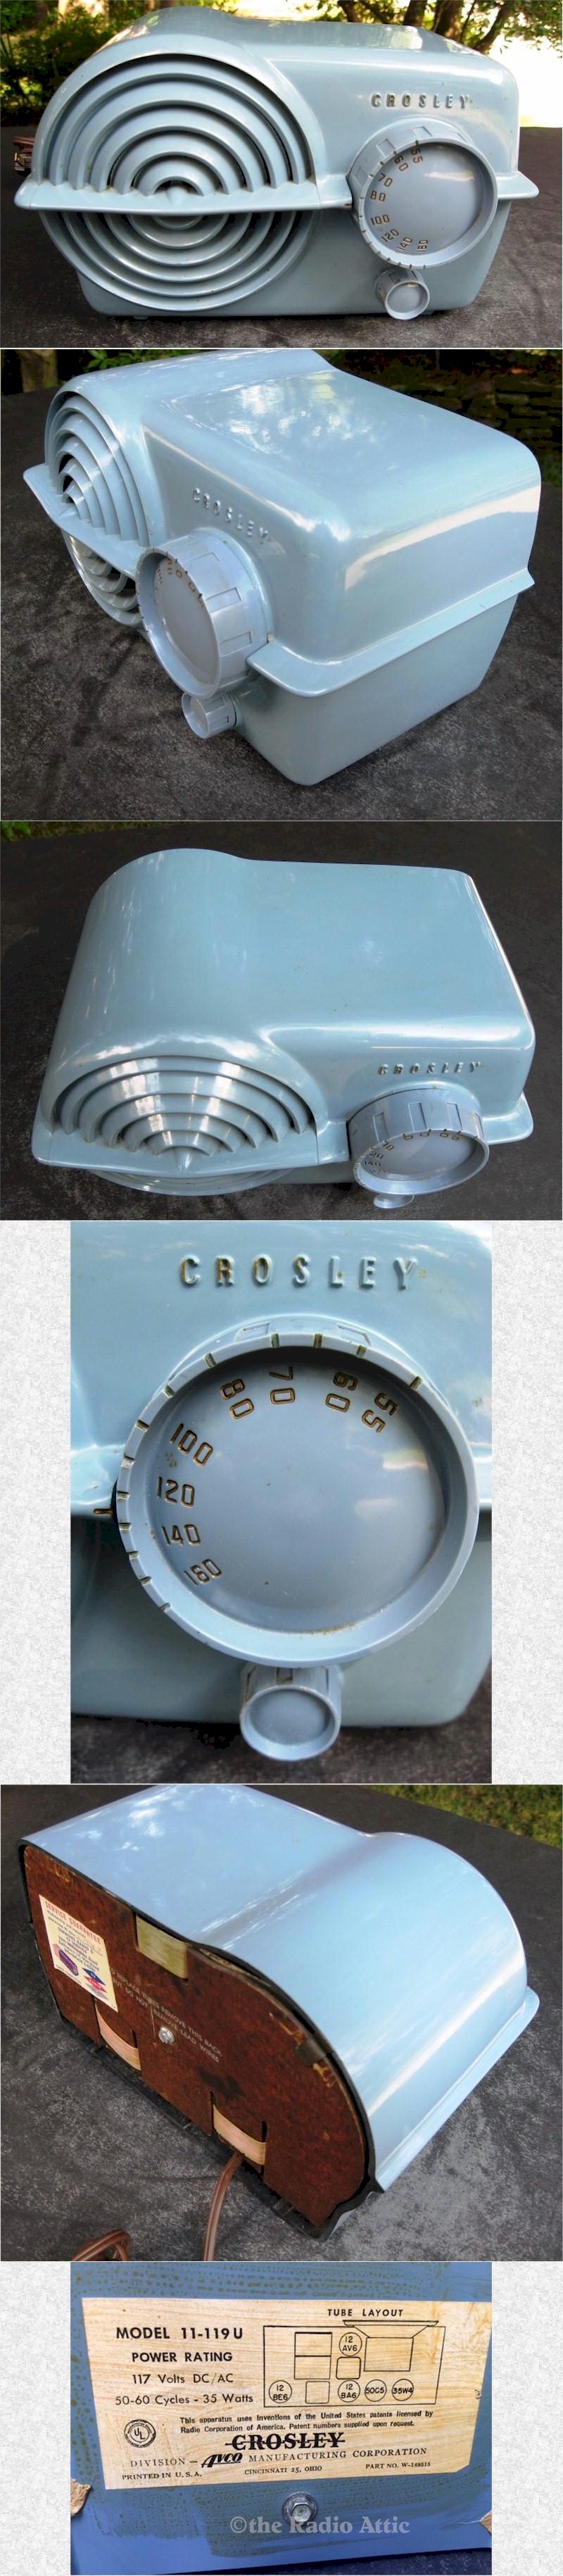 Crosley 11-119U 